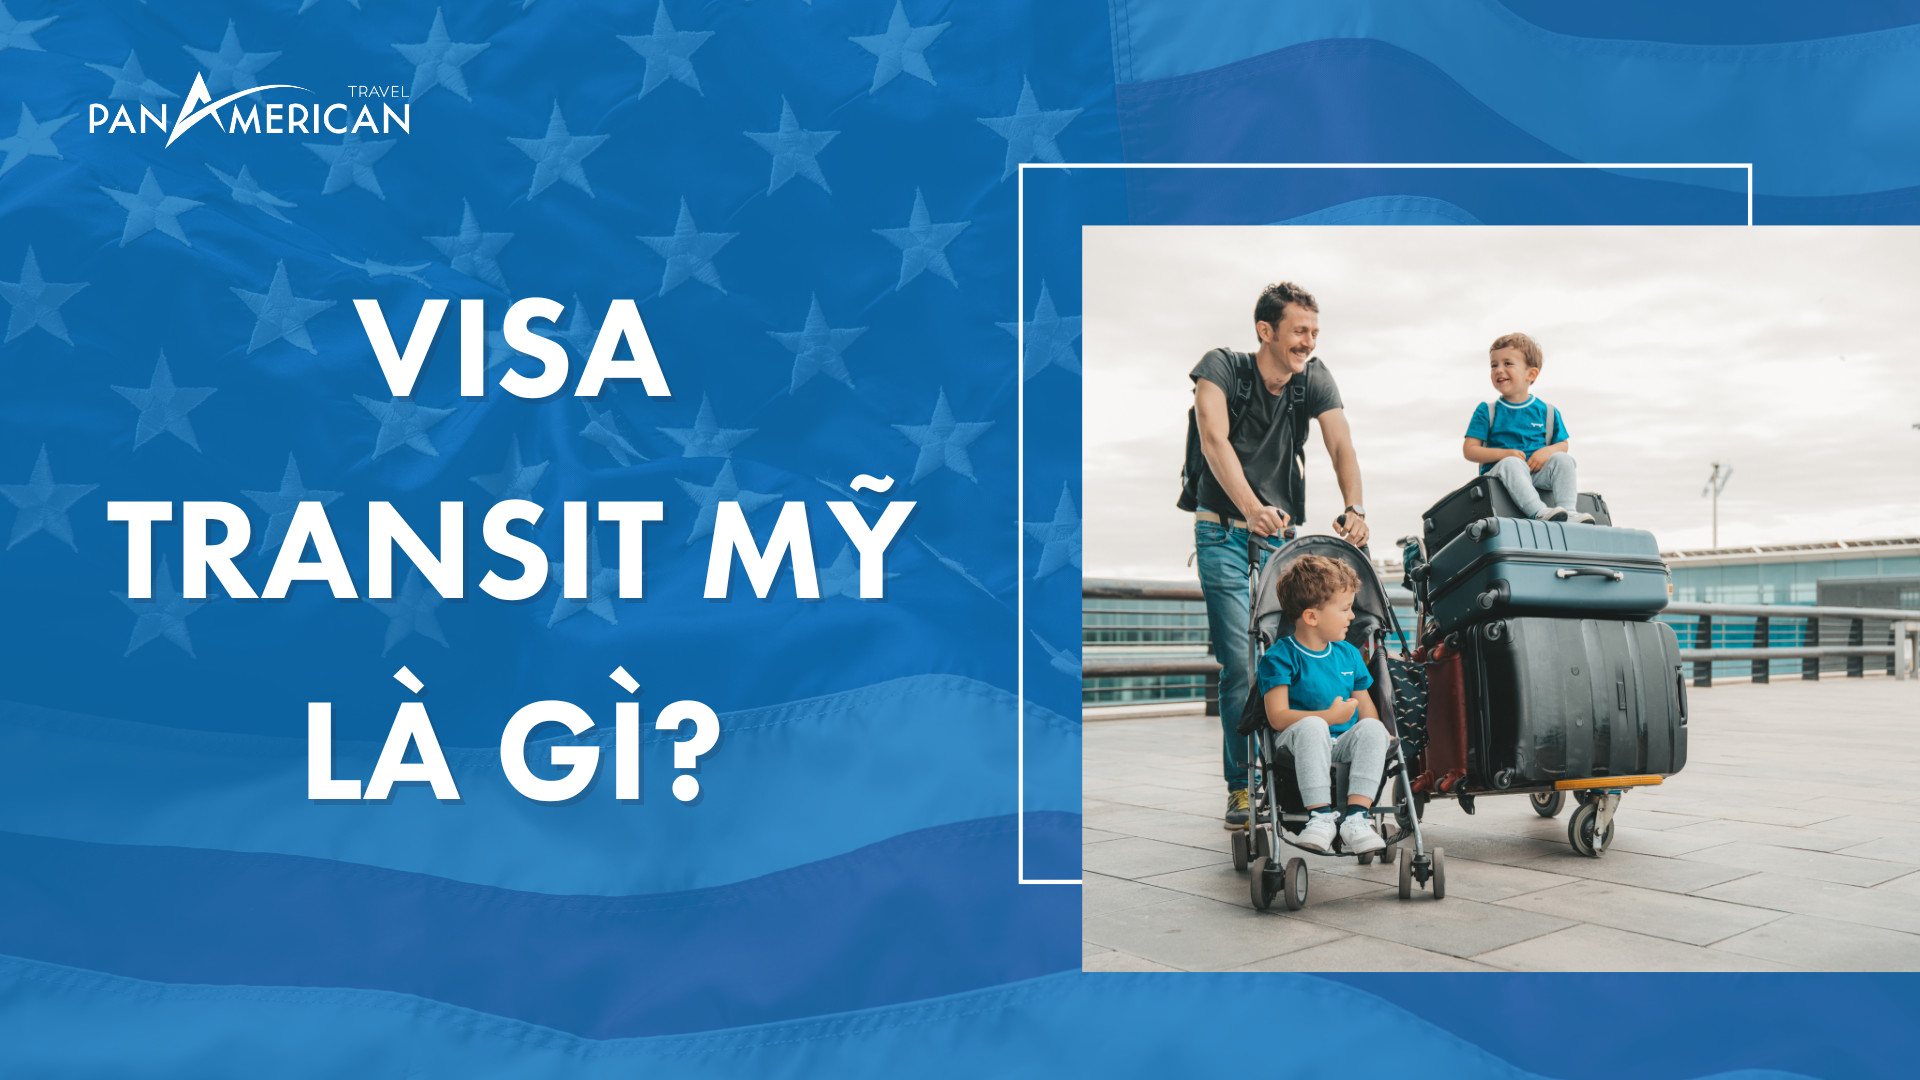 Quá cảnh có cần visa Transit Mỹ? Tất cả thông tin về visa quá cảnh!